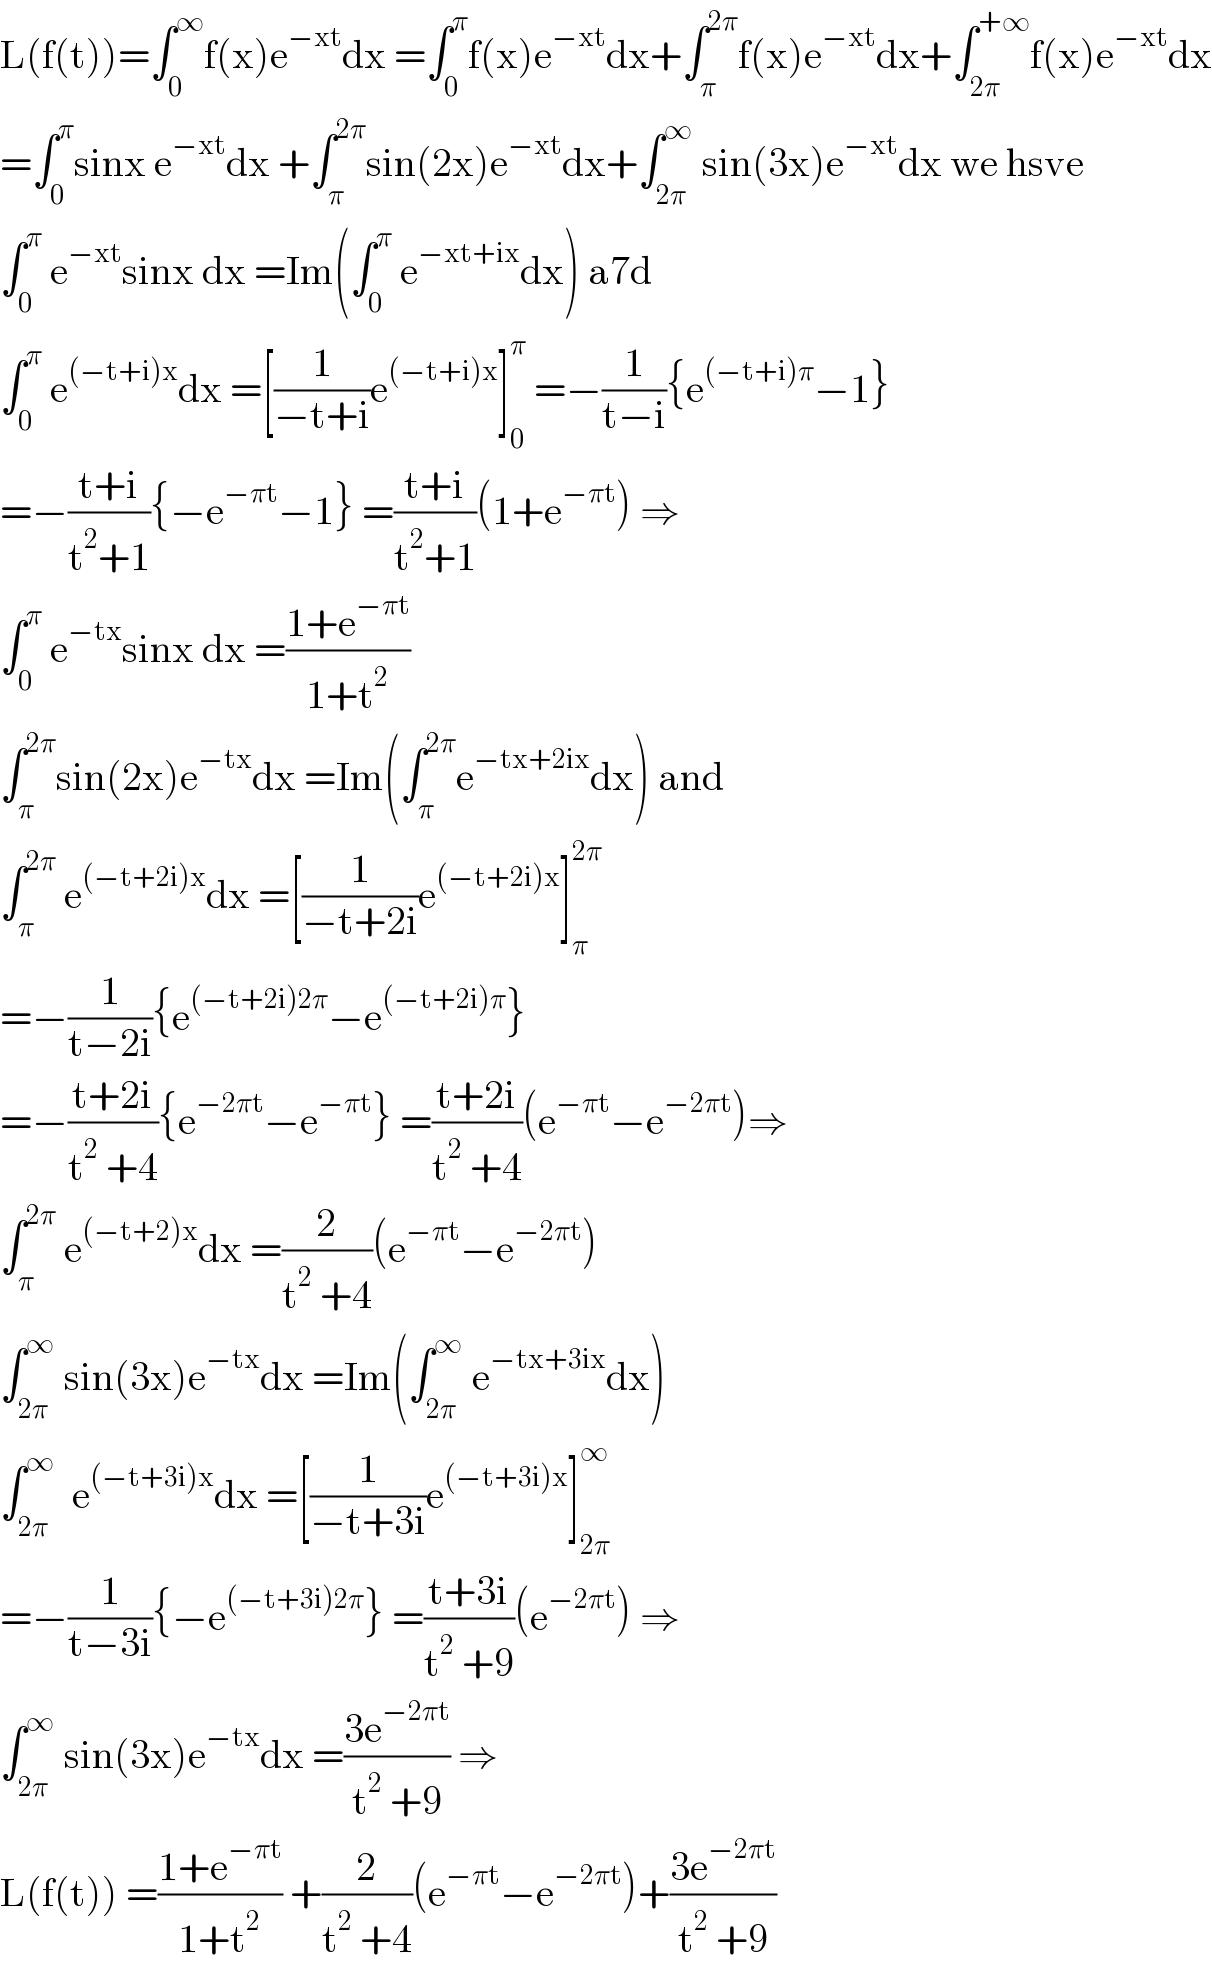 L(f(t))=∫_0 ^∞ f(x)e^(−xt) dx =∫_0 ^π f(x)e^(−xt) dx+∫_π ^(2π) f(x)e^(−xt) dx+∫_(2π) ^(+∞) f(x)e^(−xt) dx  =∫_0 ^π sinx e^(−xt) dx +∫_π ^(2π) sin(2x)e^(−xt) dx+∫_(2π) ^∞  sin(3x)e^(−xt) dx we hsve  ∫_0 ^π  e^(−xt) sinx dx =Im(∫_0 ^π  e^(−xt+ix) dx) a7d  ∫_0 ^π  e^((−t+i)x) dx =[(1/(−t+i))e^((−t+i)x) ]_0 ^π  =−(1/(t−i)){e^((−t+i)π) −1}  =−((t+i)/(t^2 +1)){−e^(−πt) −1} =((t+i)/(t^2 +1))(1+e^(−πt) ) ⇒  ∫_0 ^π  e^(−tx) sinx dx =((1+e^(−πt) )/(1+t^2 ))  ∫_π ^(2π) sin(2x)e^(−tx) dx =Im(∫_π ^(2π) e^(−tx+2ix) dx) and  ∫_π ^(2π)  e^((−t+2i)x) dx =[(1/(−t+2i))e^((−t+2i)x) ]_π ^(2π)   =−(1/(t−2i)){e^((−t+2i)2π) −e^((−t+2i)π) }  =−((t+2i)/(t^2  +4)){e^(−2πt) −e^(−πt) } =((t+2i)/(t^2  +4))(e^(−πt) −e^(−2πt) )⇒  ∫_π ^(2π)  e^((−t+2)x) dx =(2/(t^2  +4))(e^(−πt) −e^(−2πt) )  ∫_(2π) ^∞  sin(3x)e^(−tx) dx =Im(∫_(2π) ^∞  e^(−tx+3ix) dx)  ∫_(2π) ^∞   e^((−t+3i)x) dx =[(1/(−t+3i))e^((−t+3i)x) ]_(2π) ^∞   =−(1/(t−3i)){−e^((−t+3i)2π) } =((t+3i)/(t^2  +9))(e^(−2πt) ) ⇒  ∫_(2π) ^∞  sin(3x)e^(−tx) dx =((3e^(−2πt) )/(t^2  +9)) ⇒  L(f(t)) =((1+e^(−πt) )/(1+t^2 )) +(2/(t^2  +4))(e^(−πt) −e^(−2πt) )+((3e^(−2πt) )/(t^2  +9))  